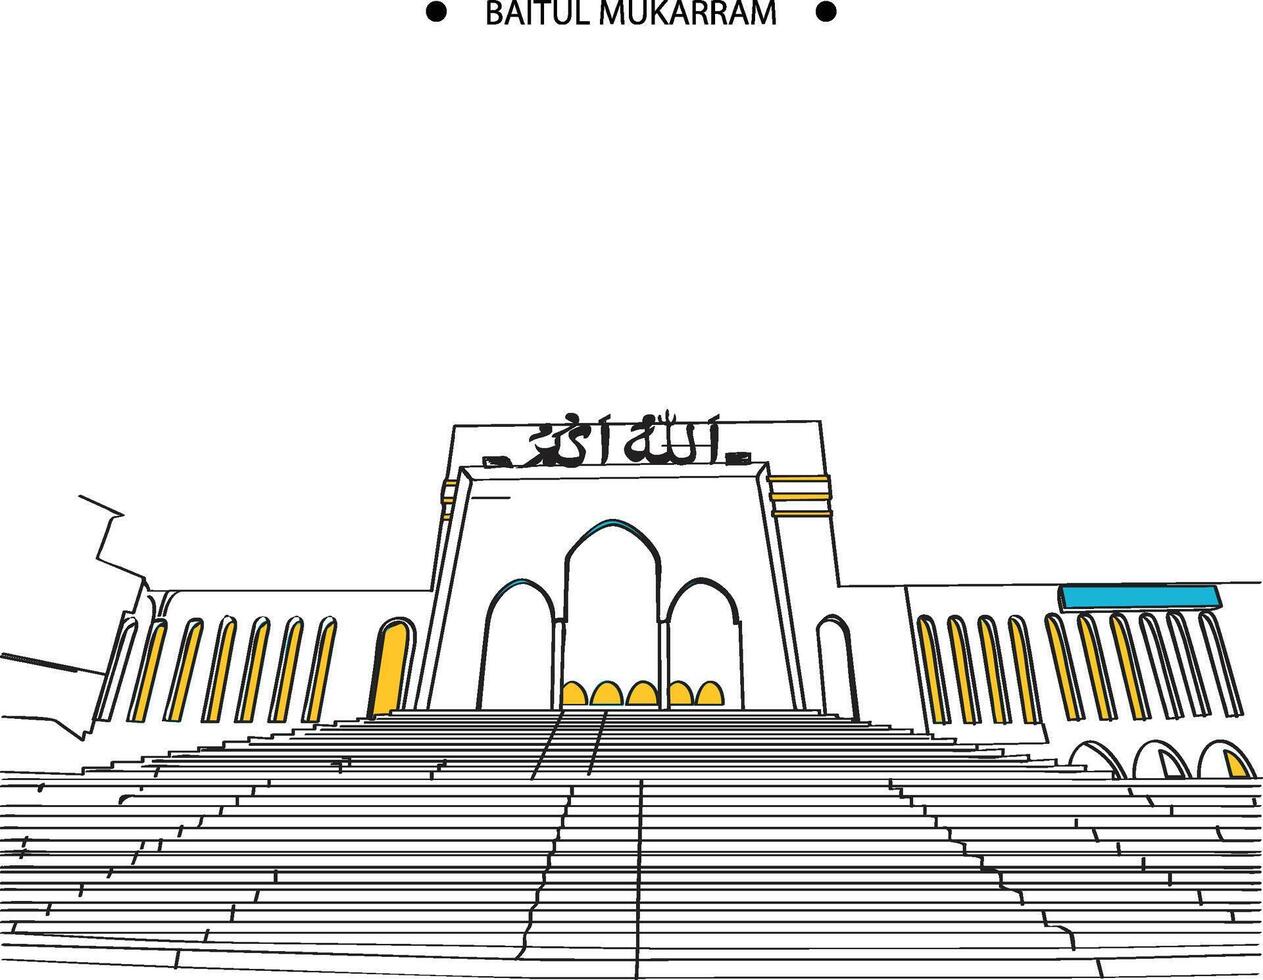 baitul mukarram masjid vector